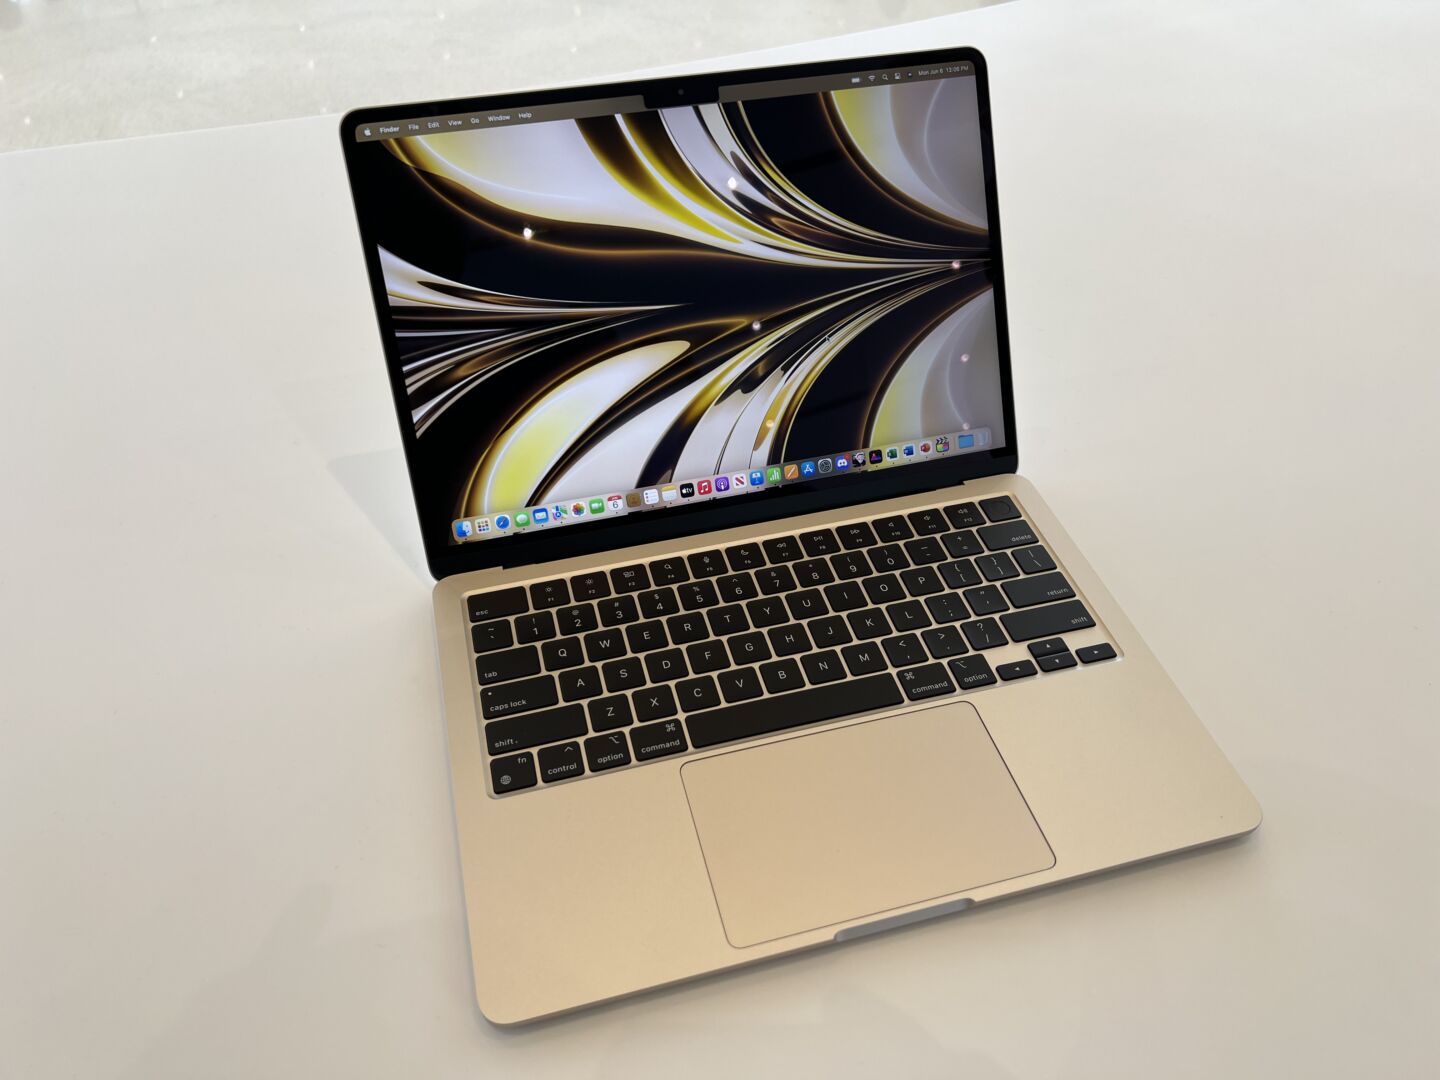 Nový MacBook Air M2 má vylepšenou klávesnici Magic Keyboard s nůžkovým mechanismem a s 1mm zdvihem pro tiché psaní a přesnou odezvu.